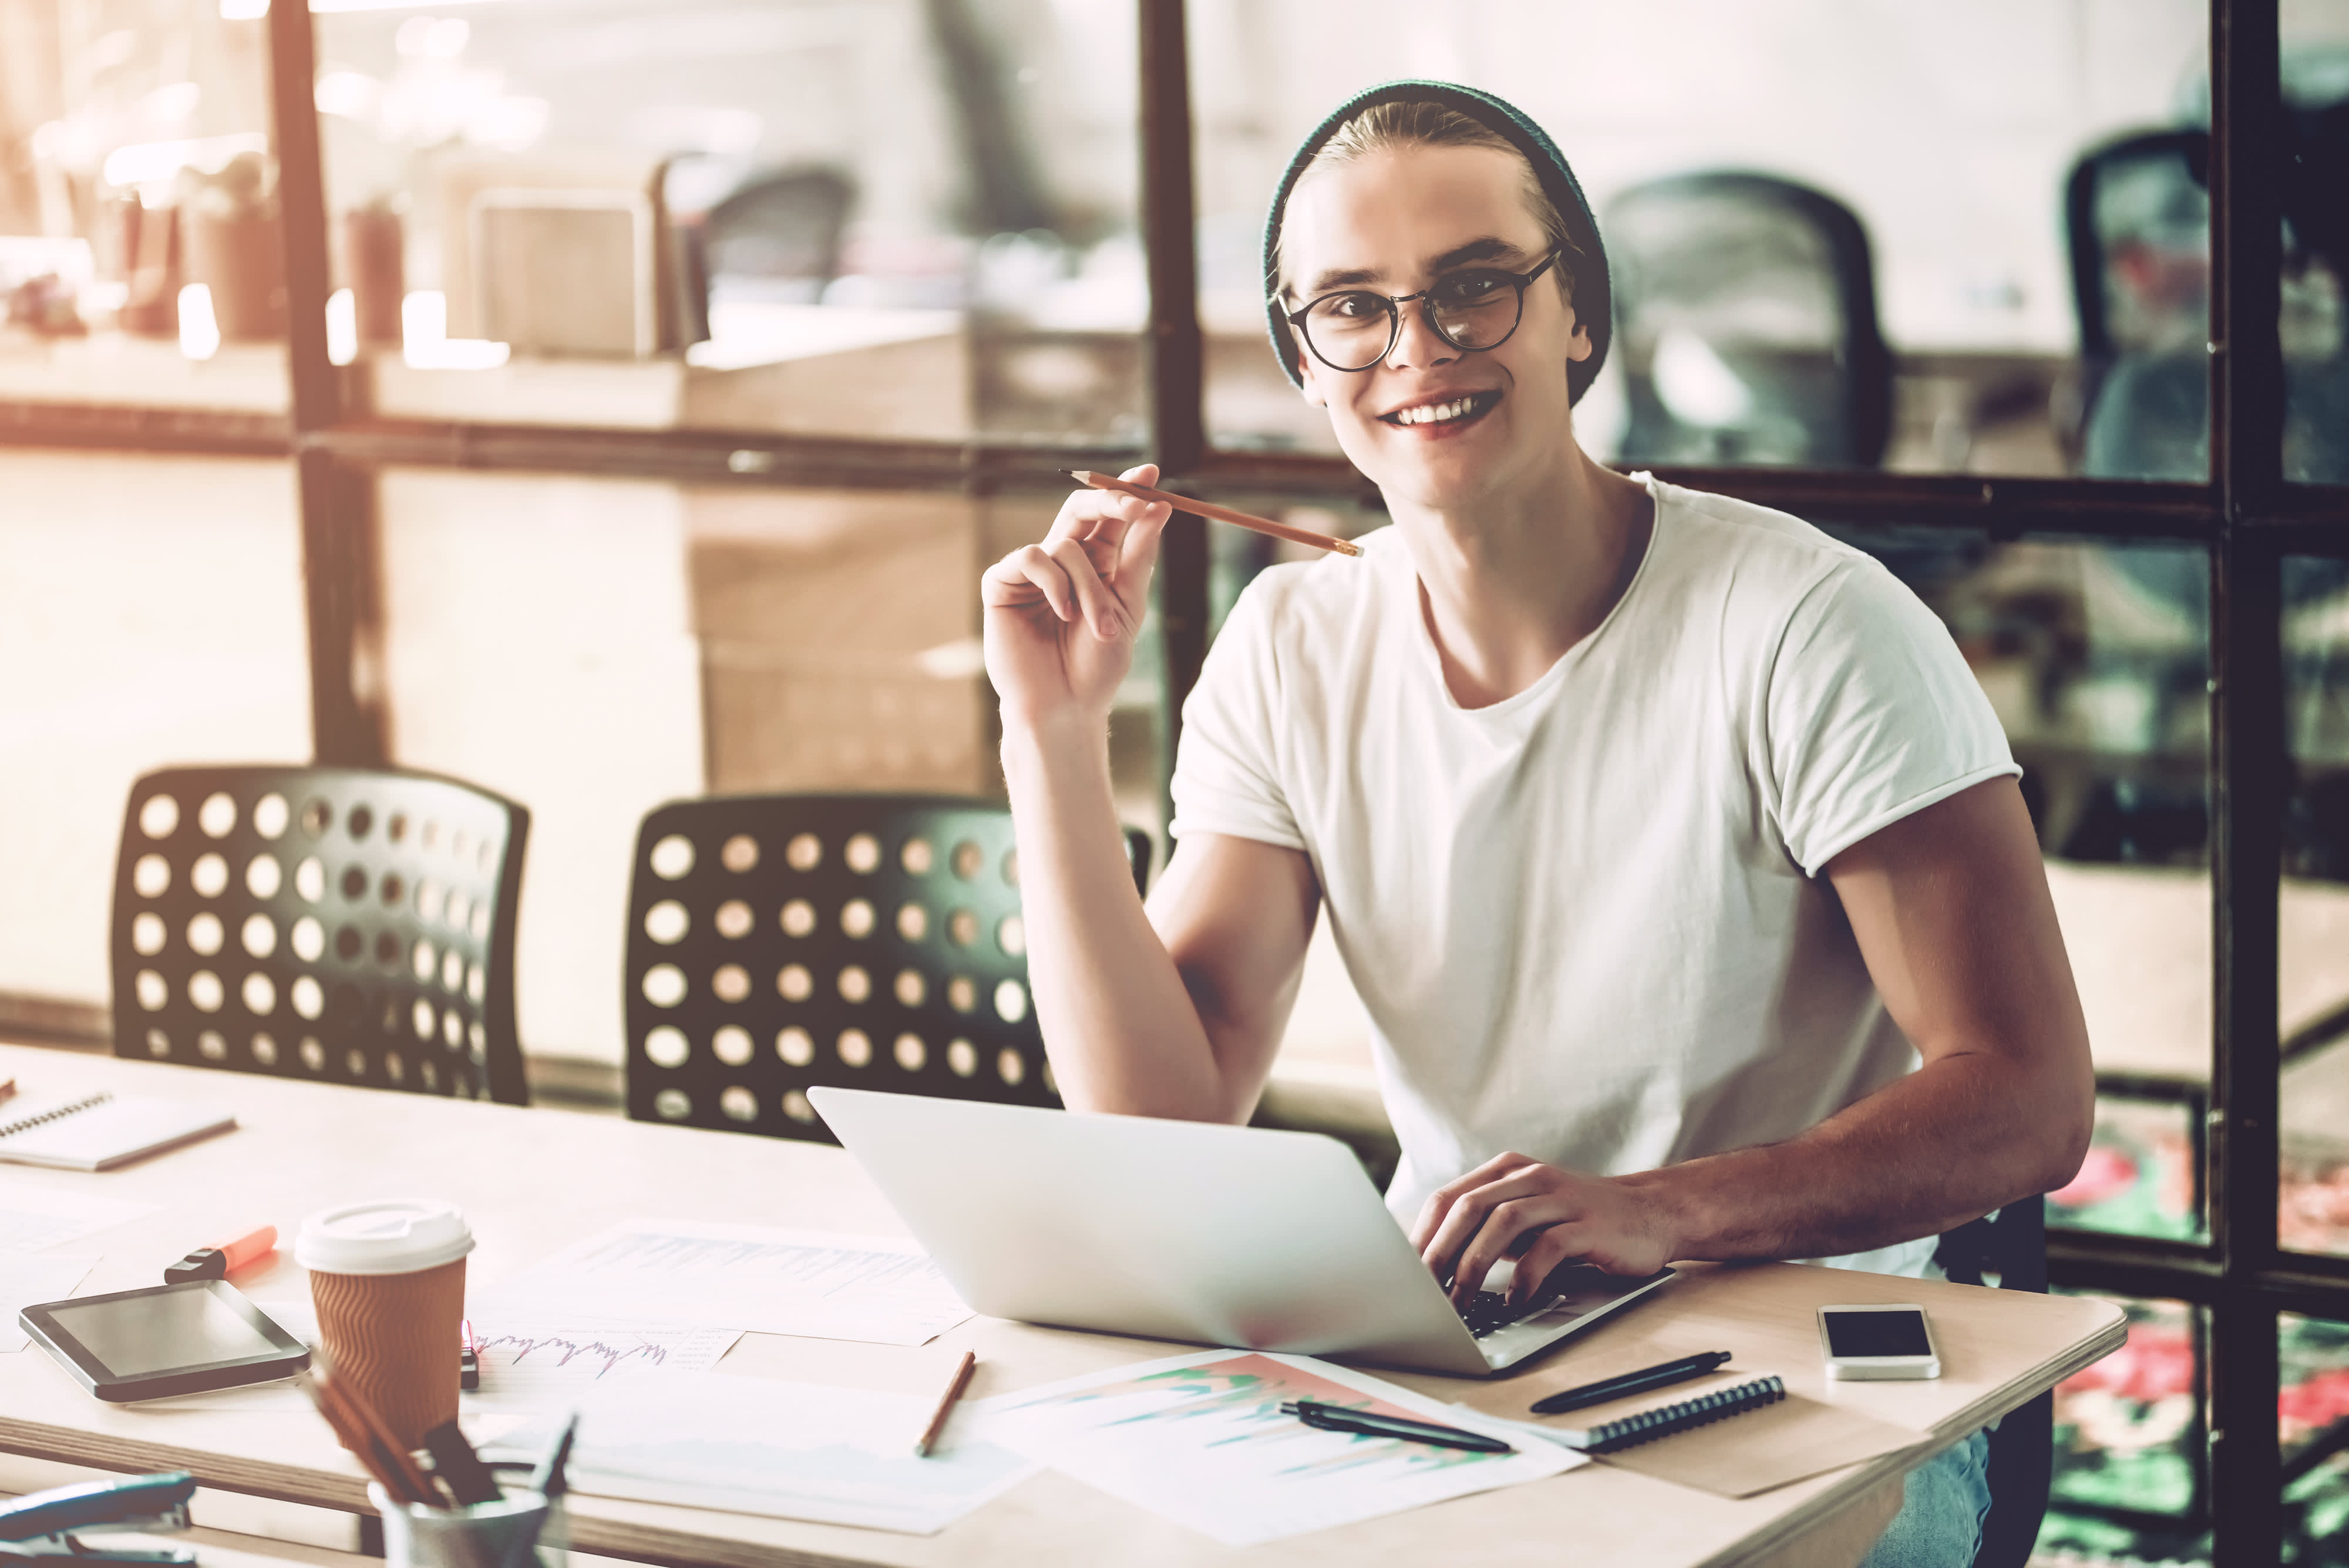 Titelbild für Infoseite “duales Studium Marketingmanagement": Lächelnder dualer Student hält einen Bleistift in der Hand und sitzt in einem Büro am Schreibtisch mit Laptop vor sich